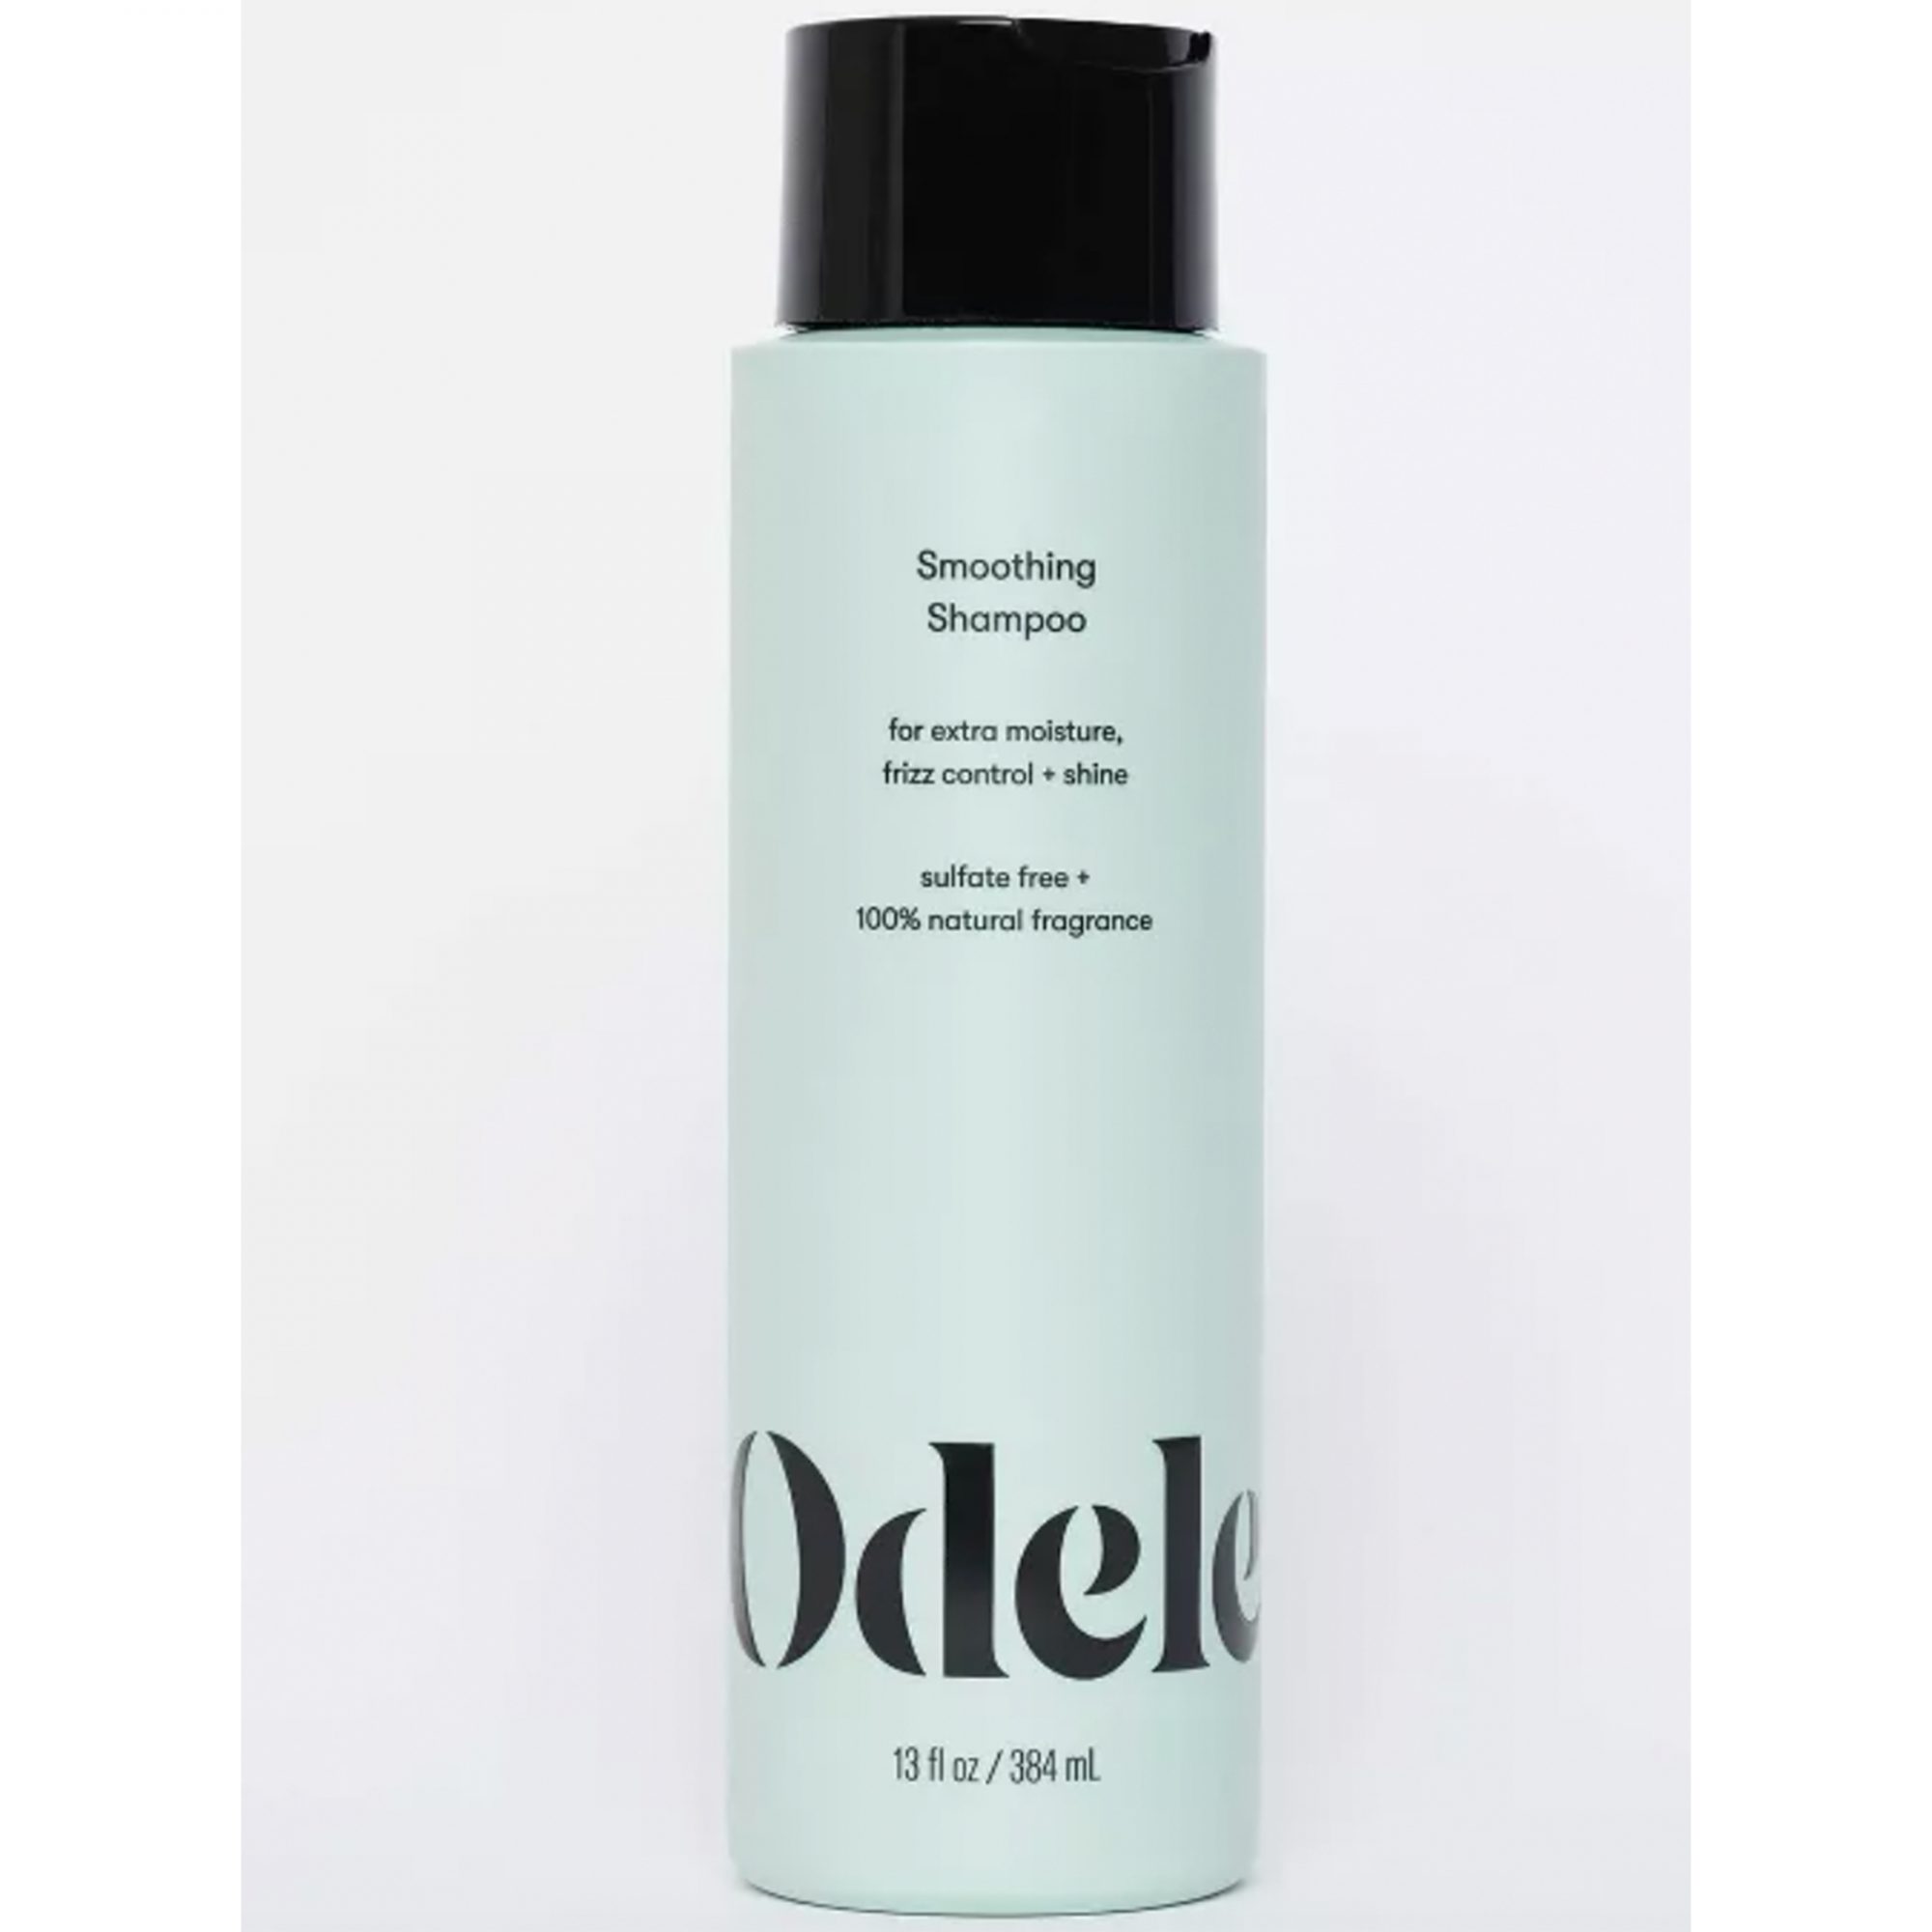 odele-smoothing-shampoo